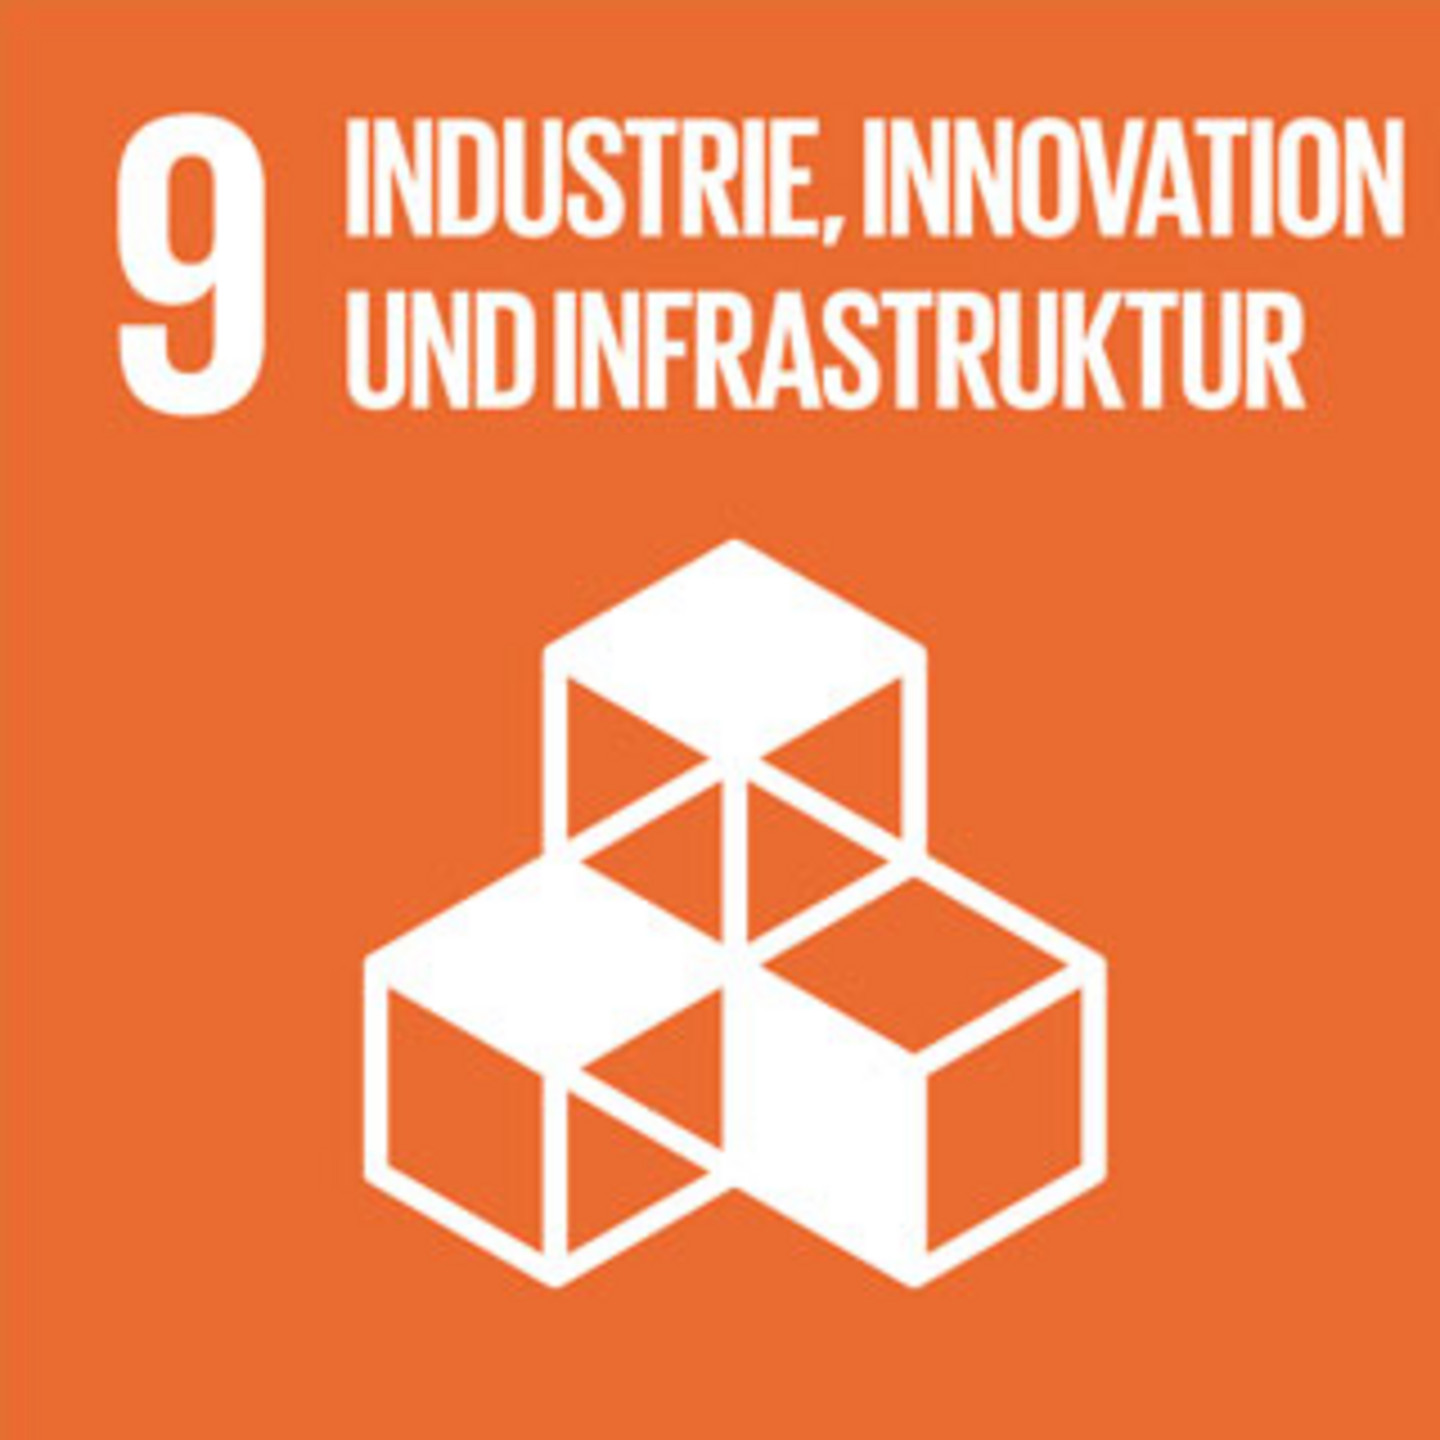 Ein orangener Hintergrund mit der Schrift "Industrie, Innovation und Infrastruktur".